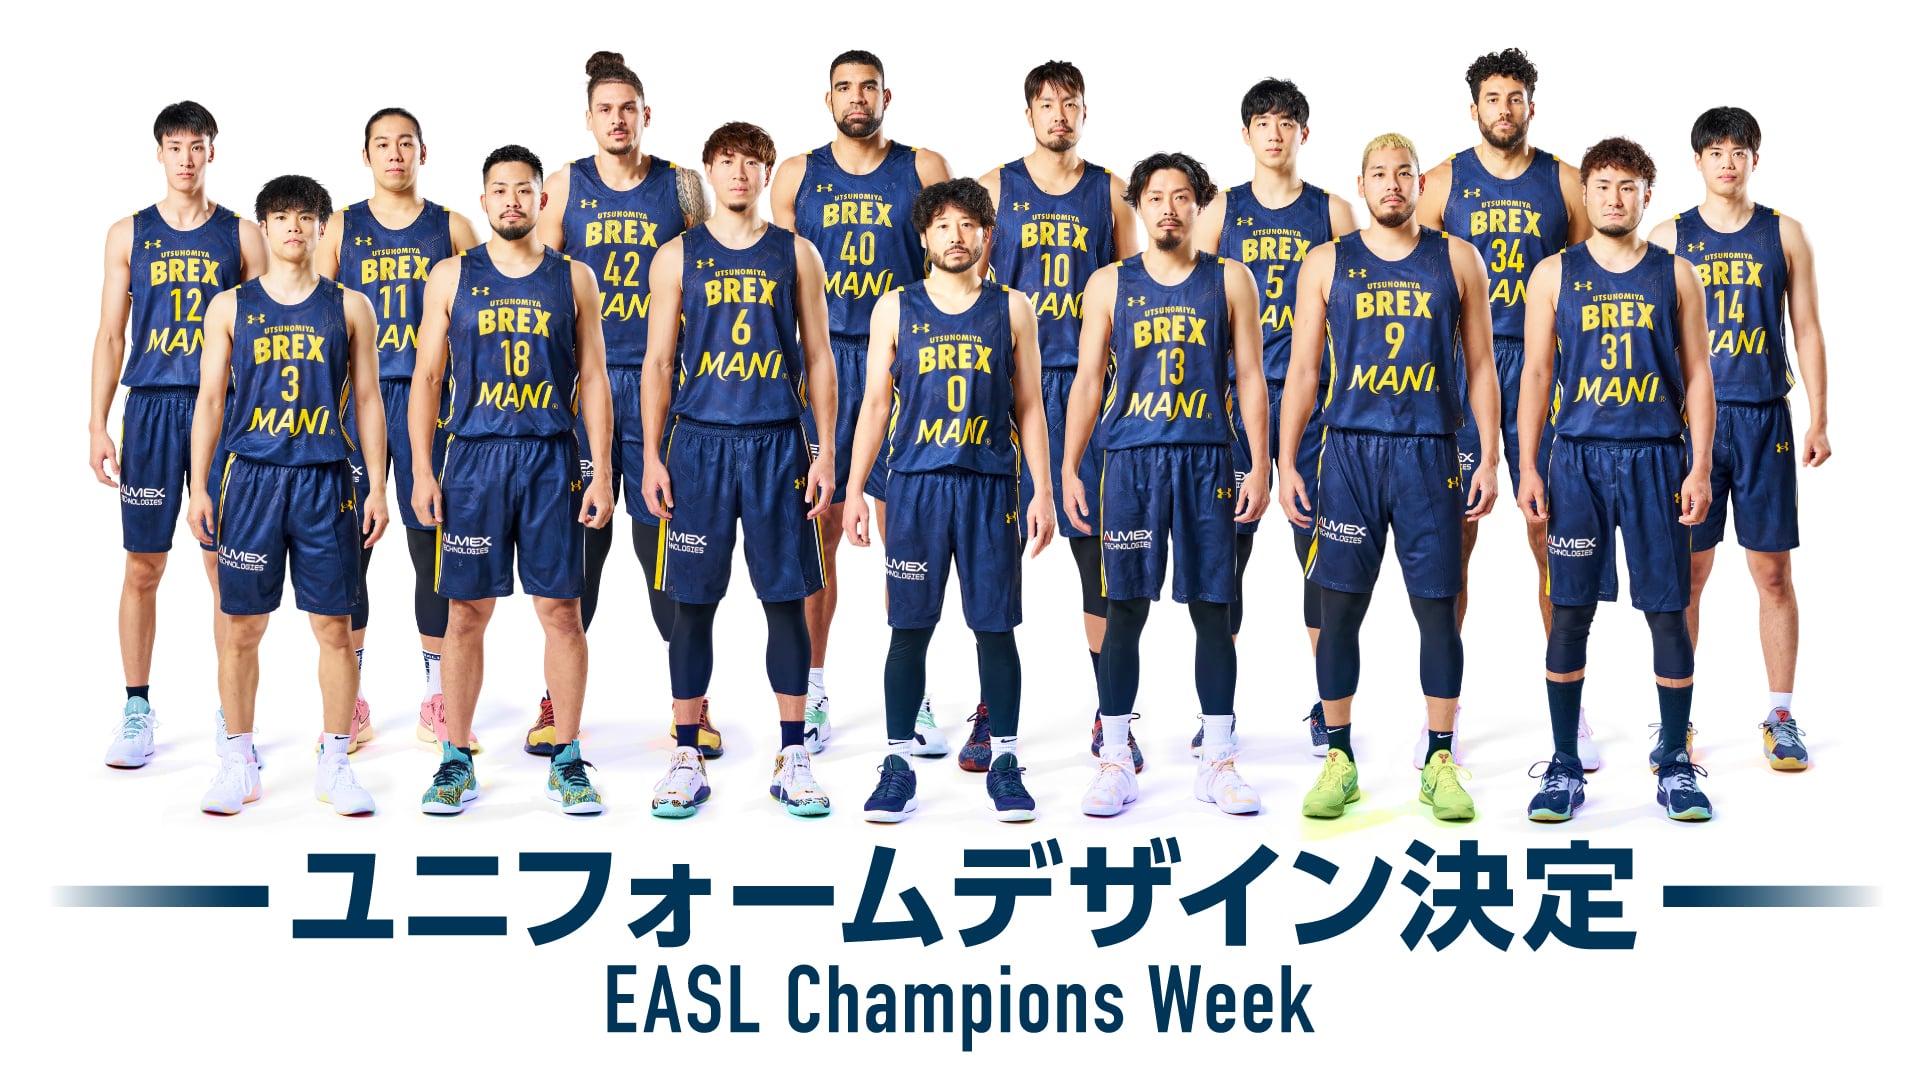 EASL Champions Week ユニフォームデザイン決定 | 宇都宮ブレックス